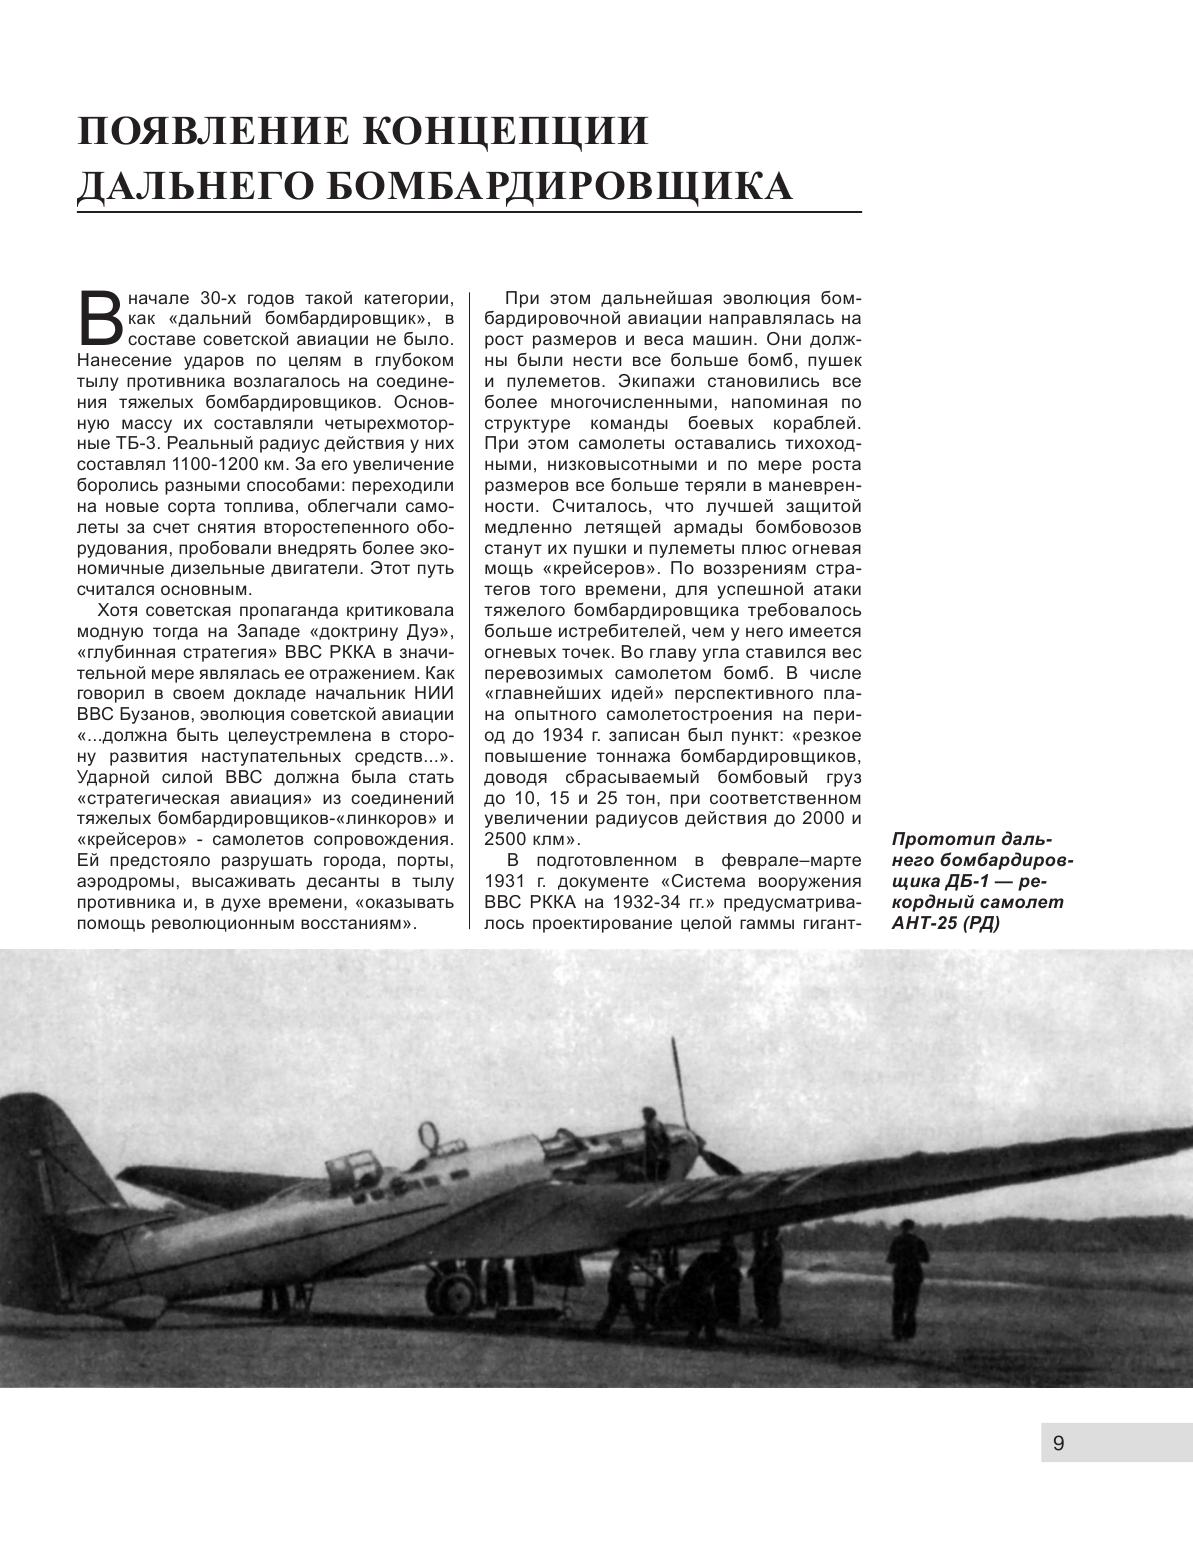 ДБ-3/Ил-4 и его модификации. Торпедоносец и основа Авиации Дальнего Действия - фото №10